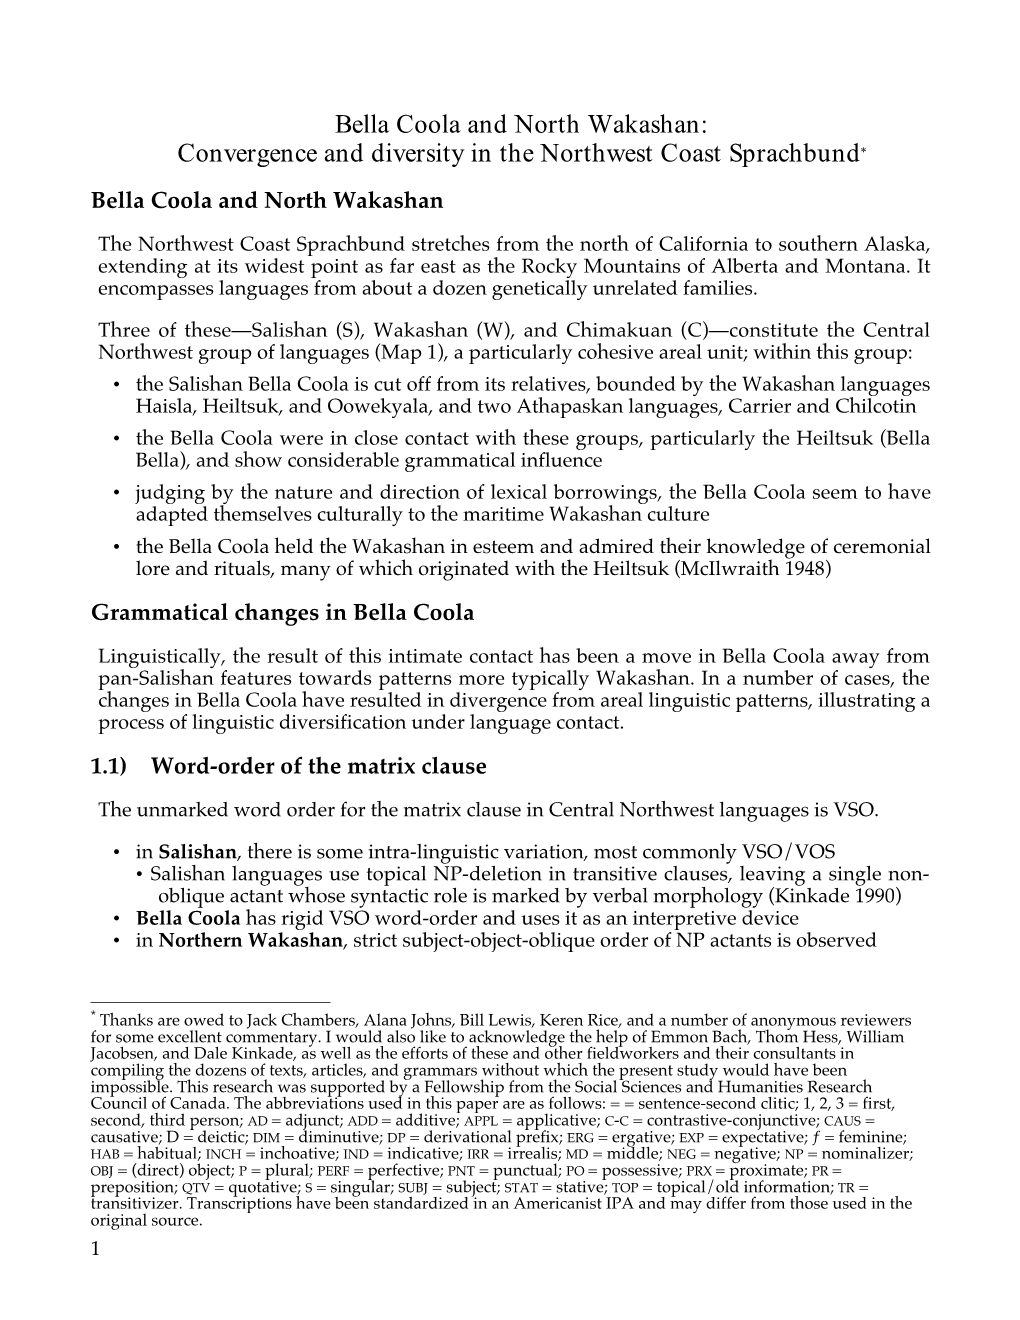 Bella Coola and North Wakashan: Convergence and Diversity in the Northwest Coast Sprachbund* Bella Coola and North Wakashan